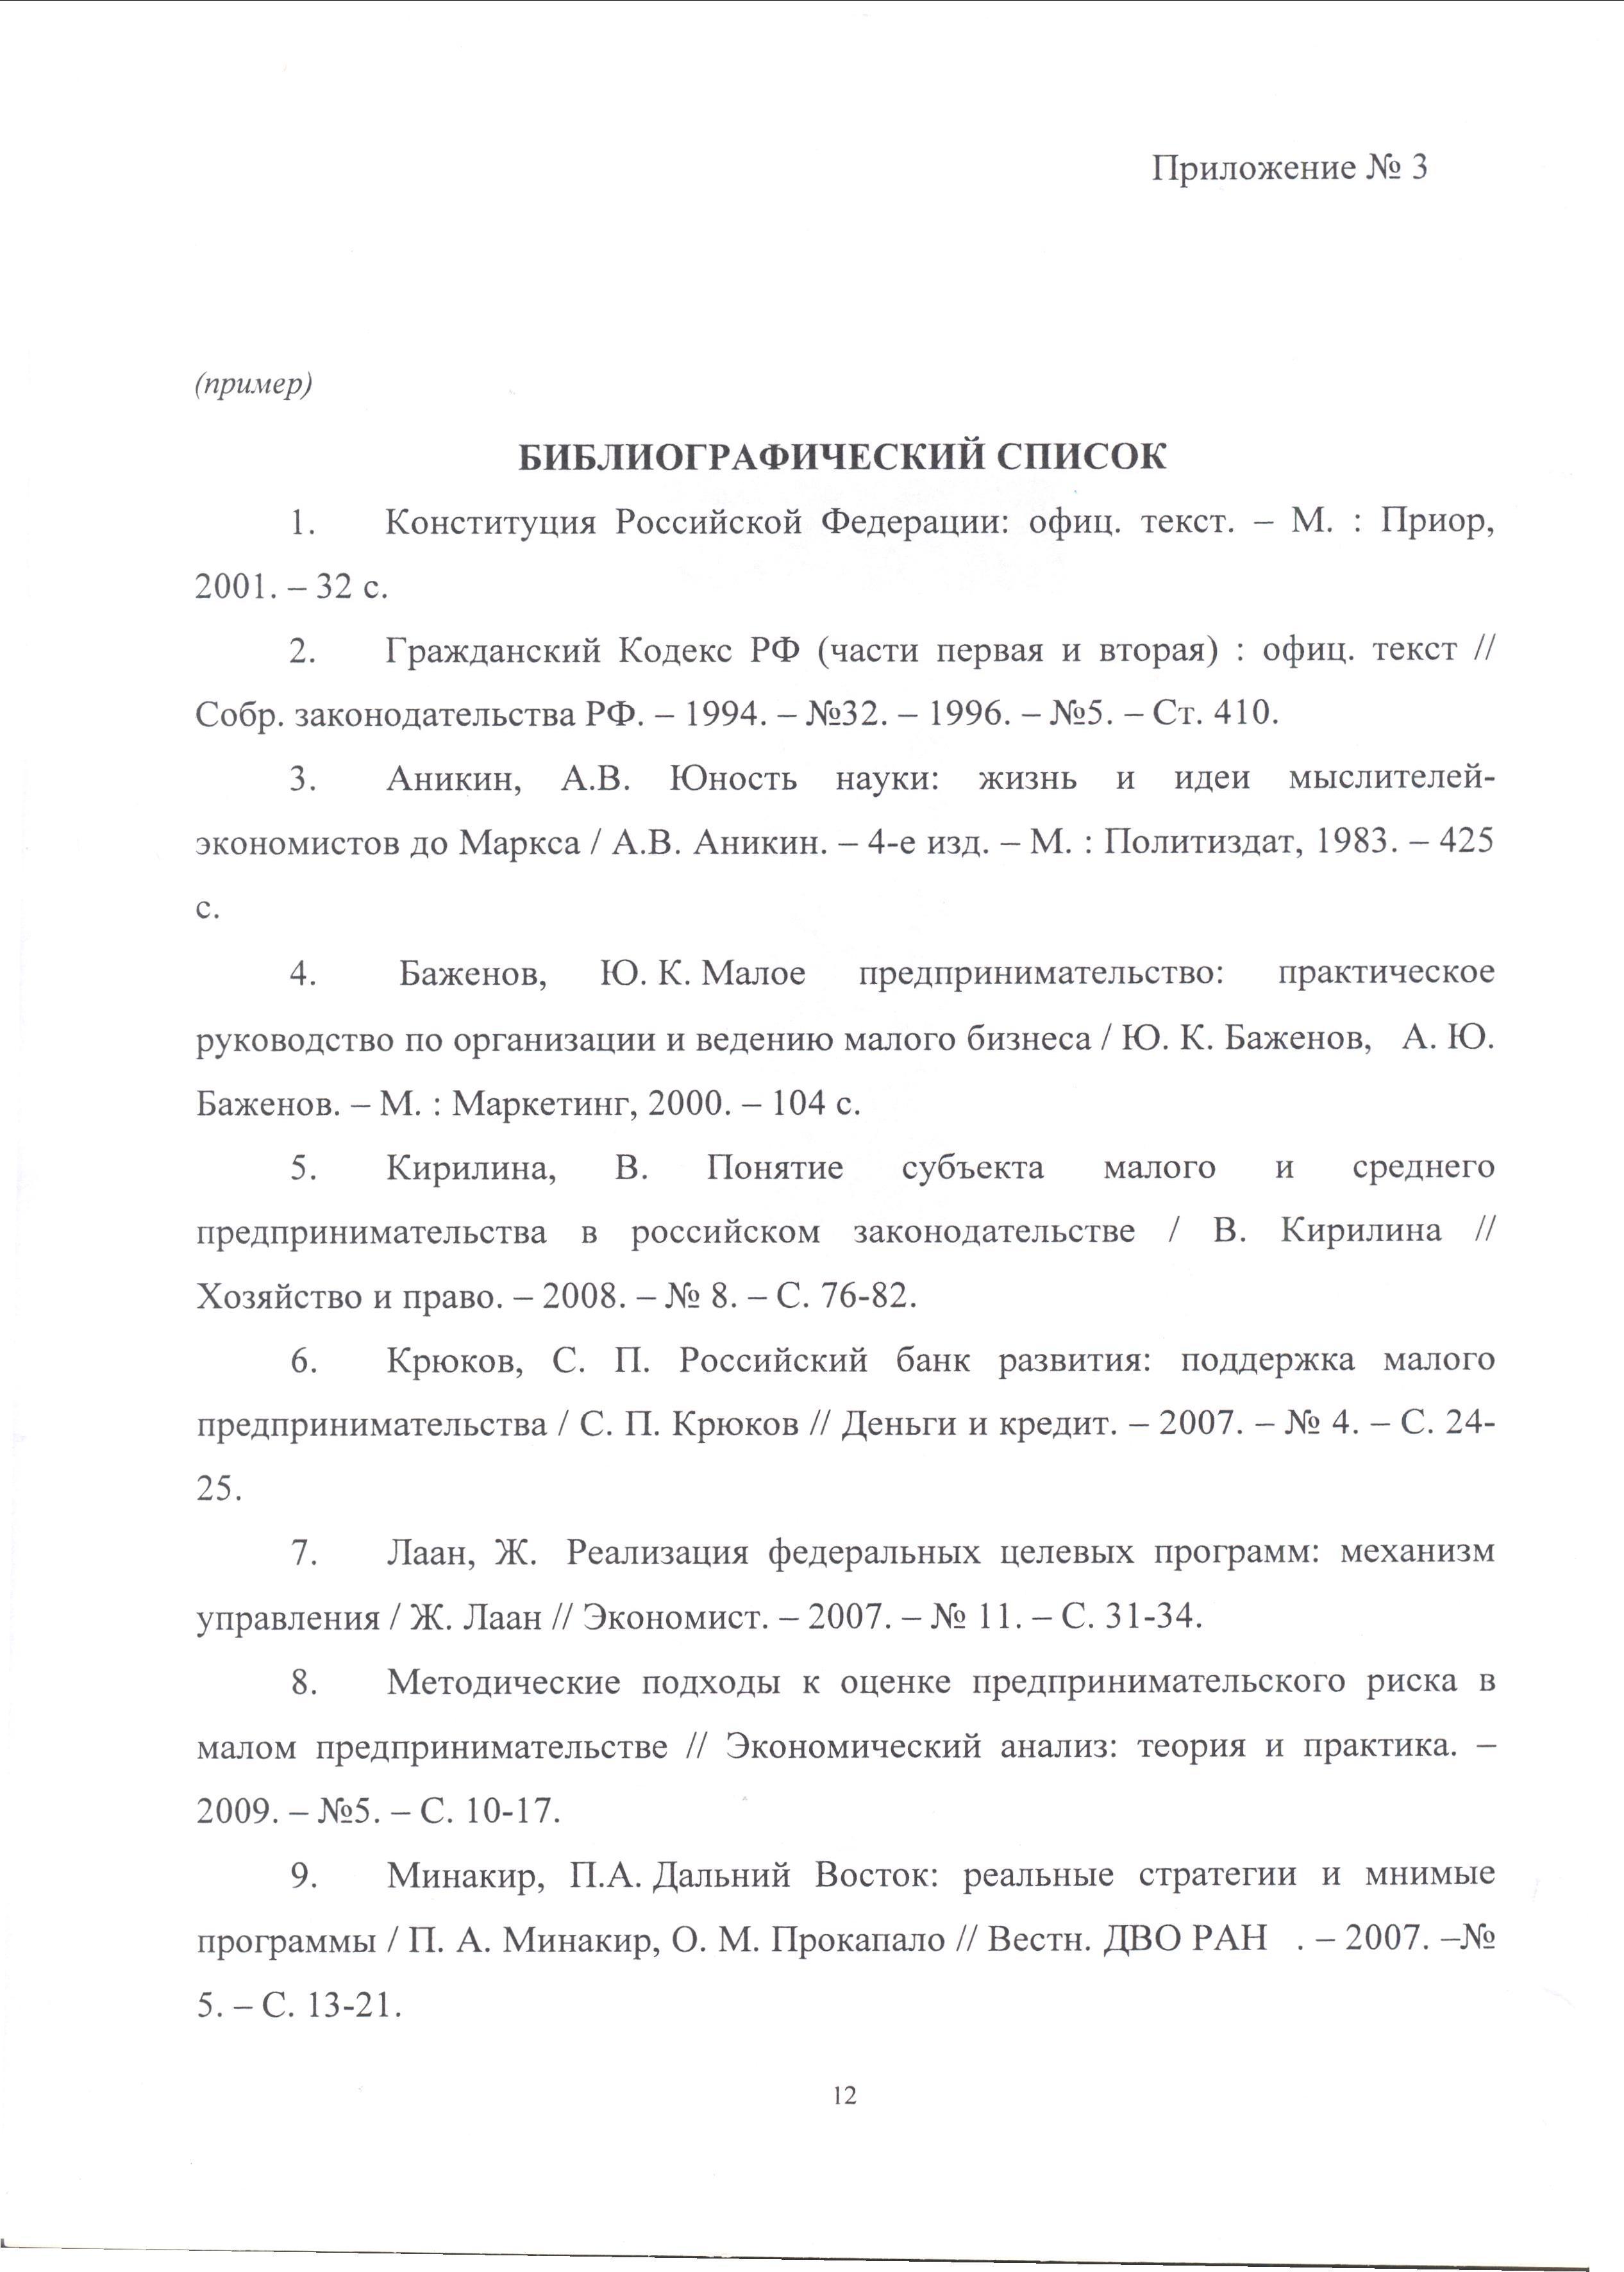 ПростоСдал.ру - Оформление списка литературы в дипломе